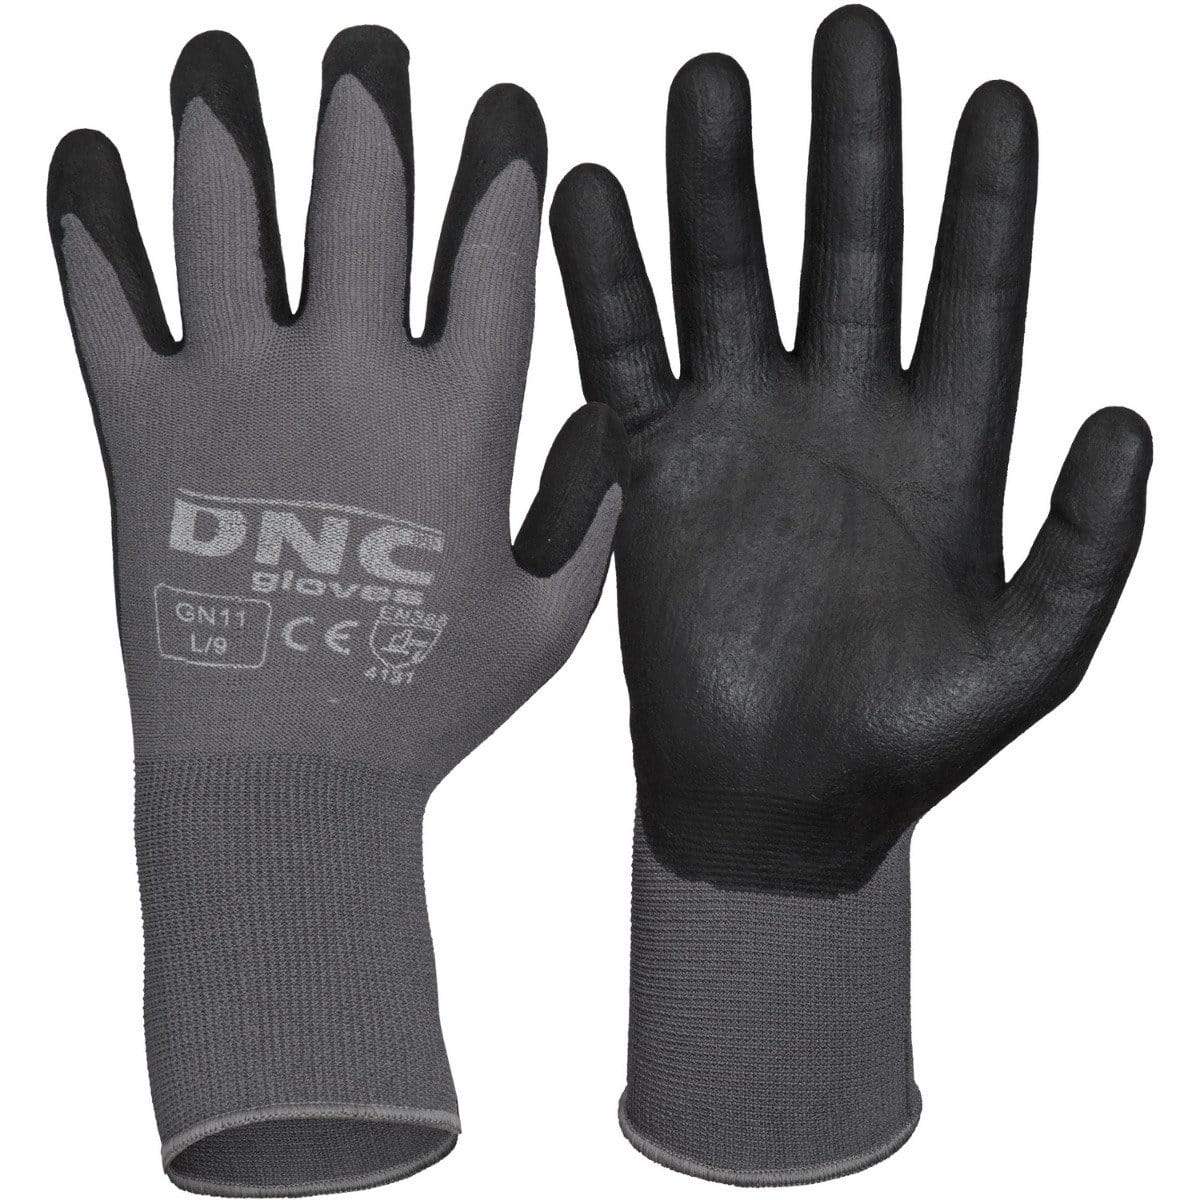 Dnc Workwear Premium Nitrile Supaflex Palm - GN11 PPE DNC Workwear Black/Grey 2XL/11 